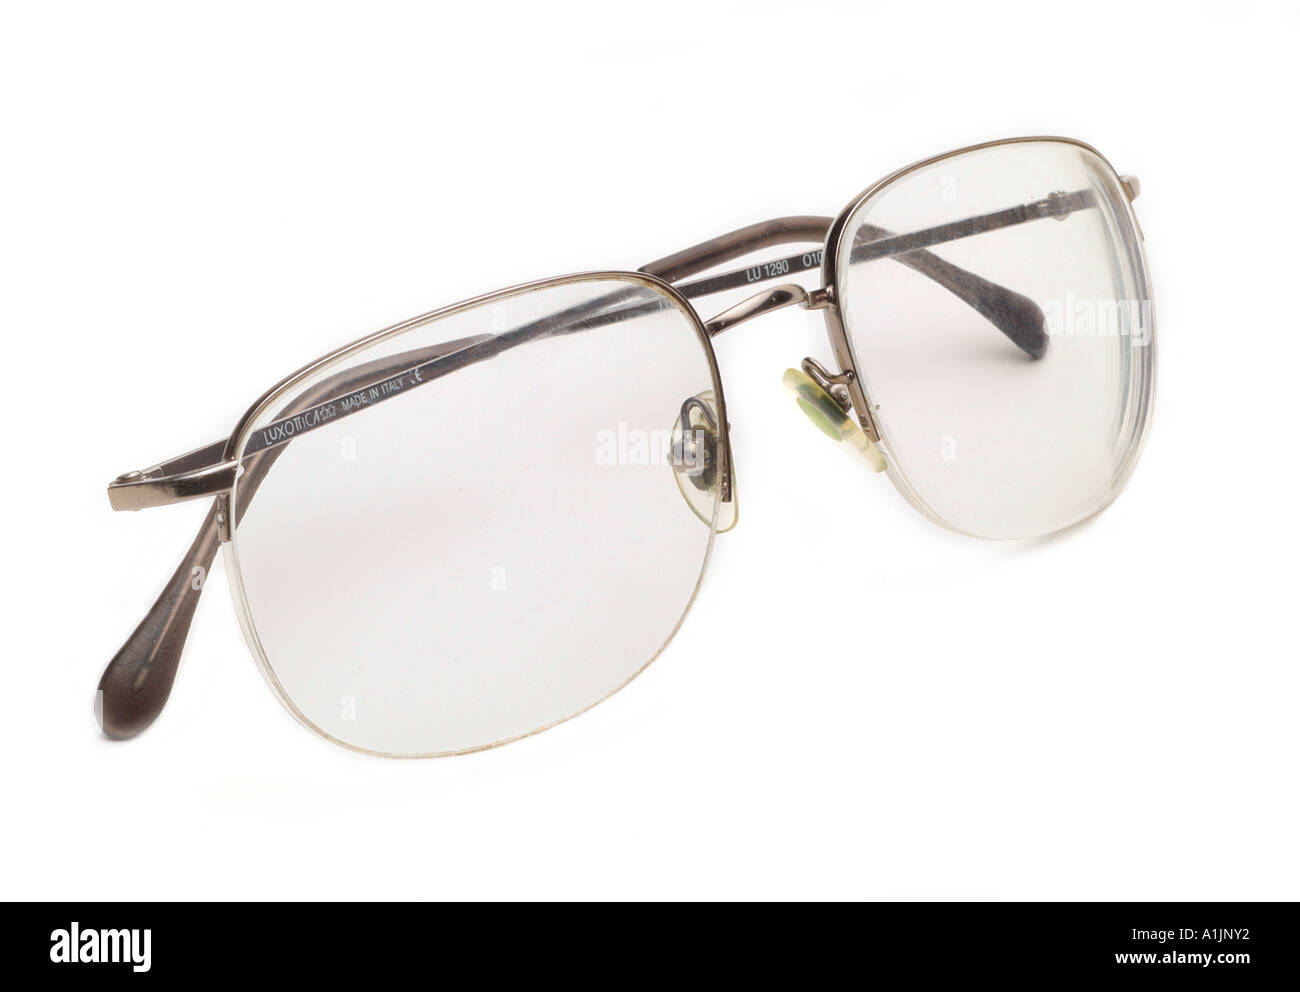 Las gafas graduadas luxotica made in Italy Foto de stock